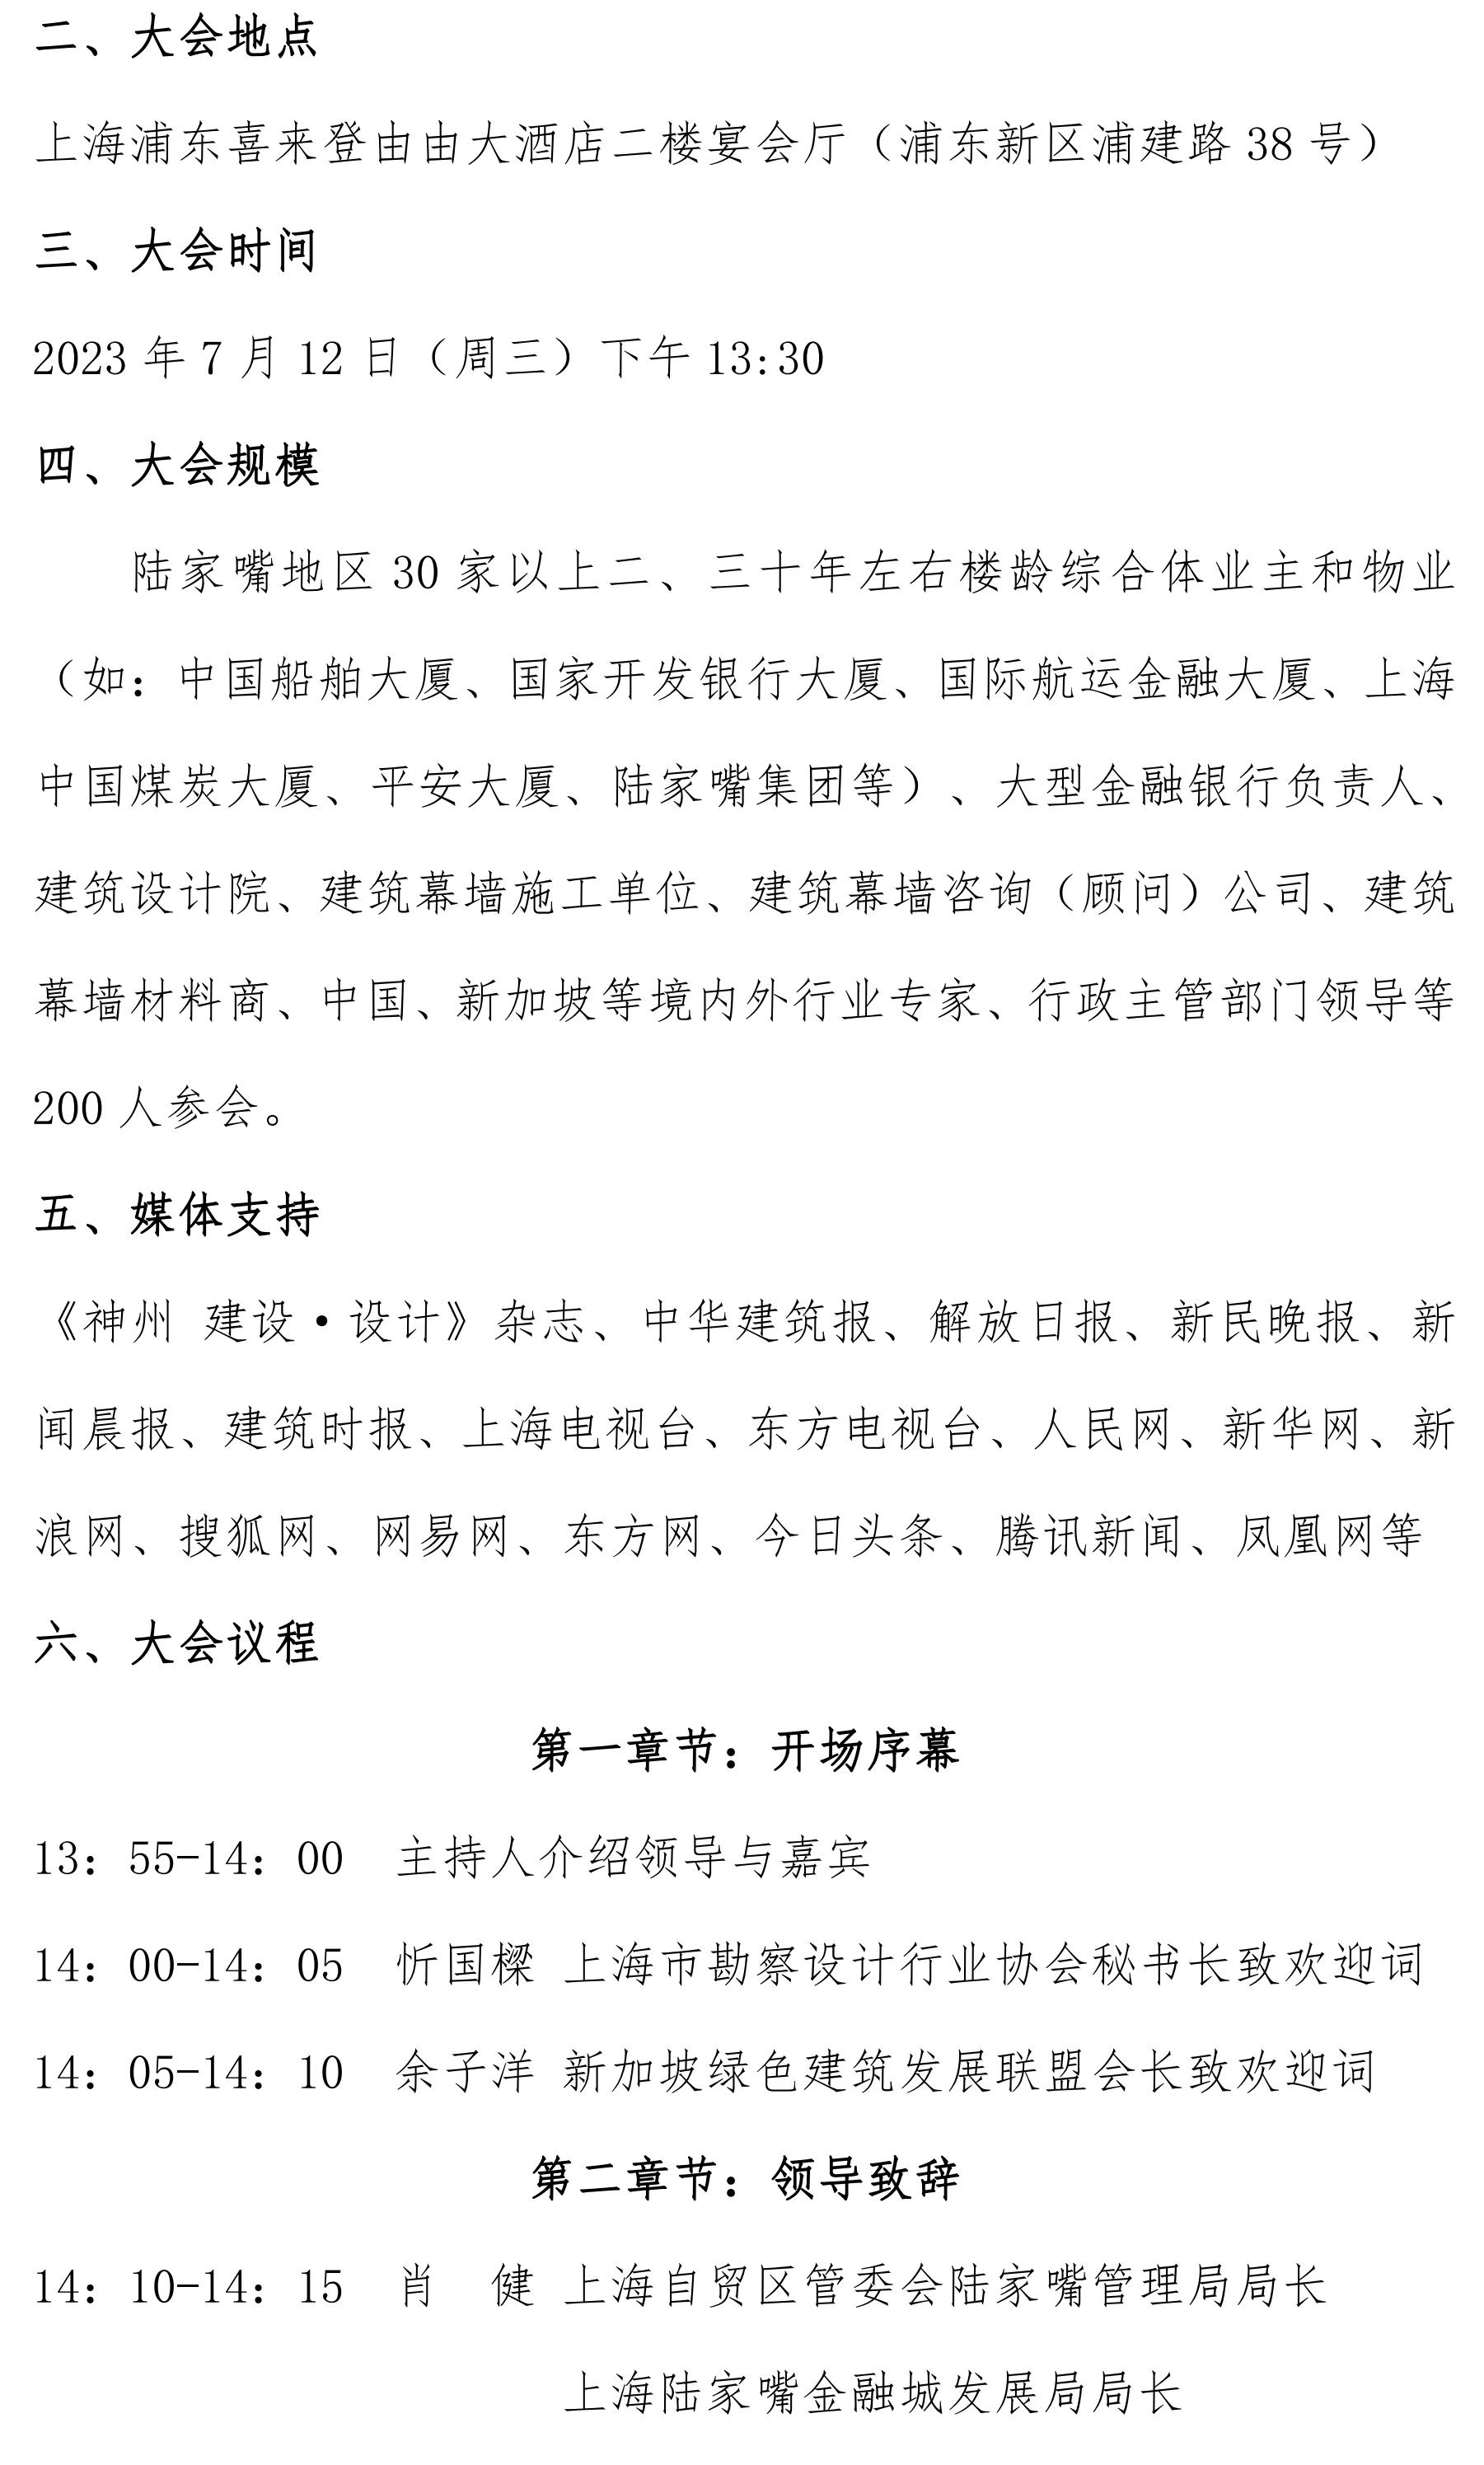 关于举办第一届上海城市更新国际论坛——既有玻璃幕墙安全综合改造高峰论坛_02.jpg